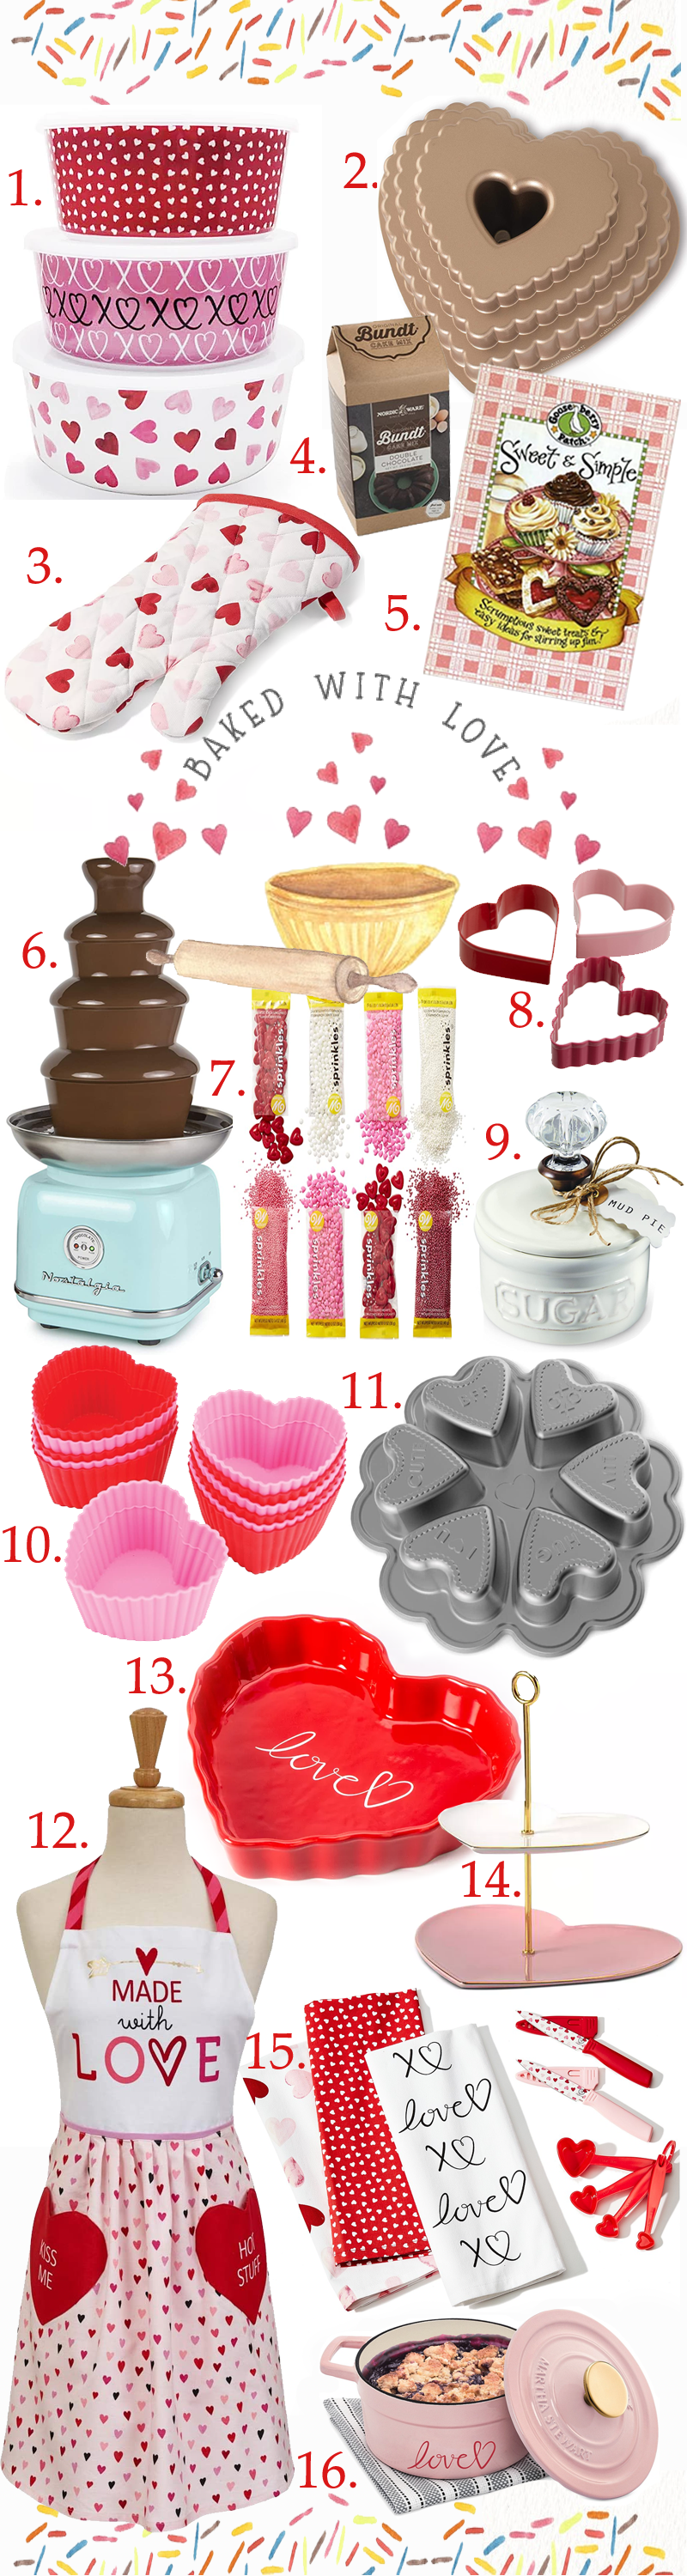 Valentine's Baking Supplies & Treats